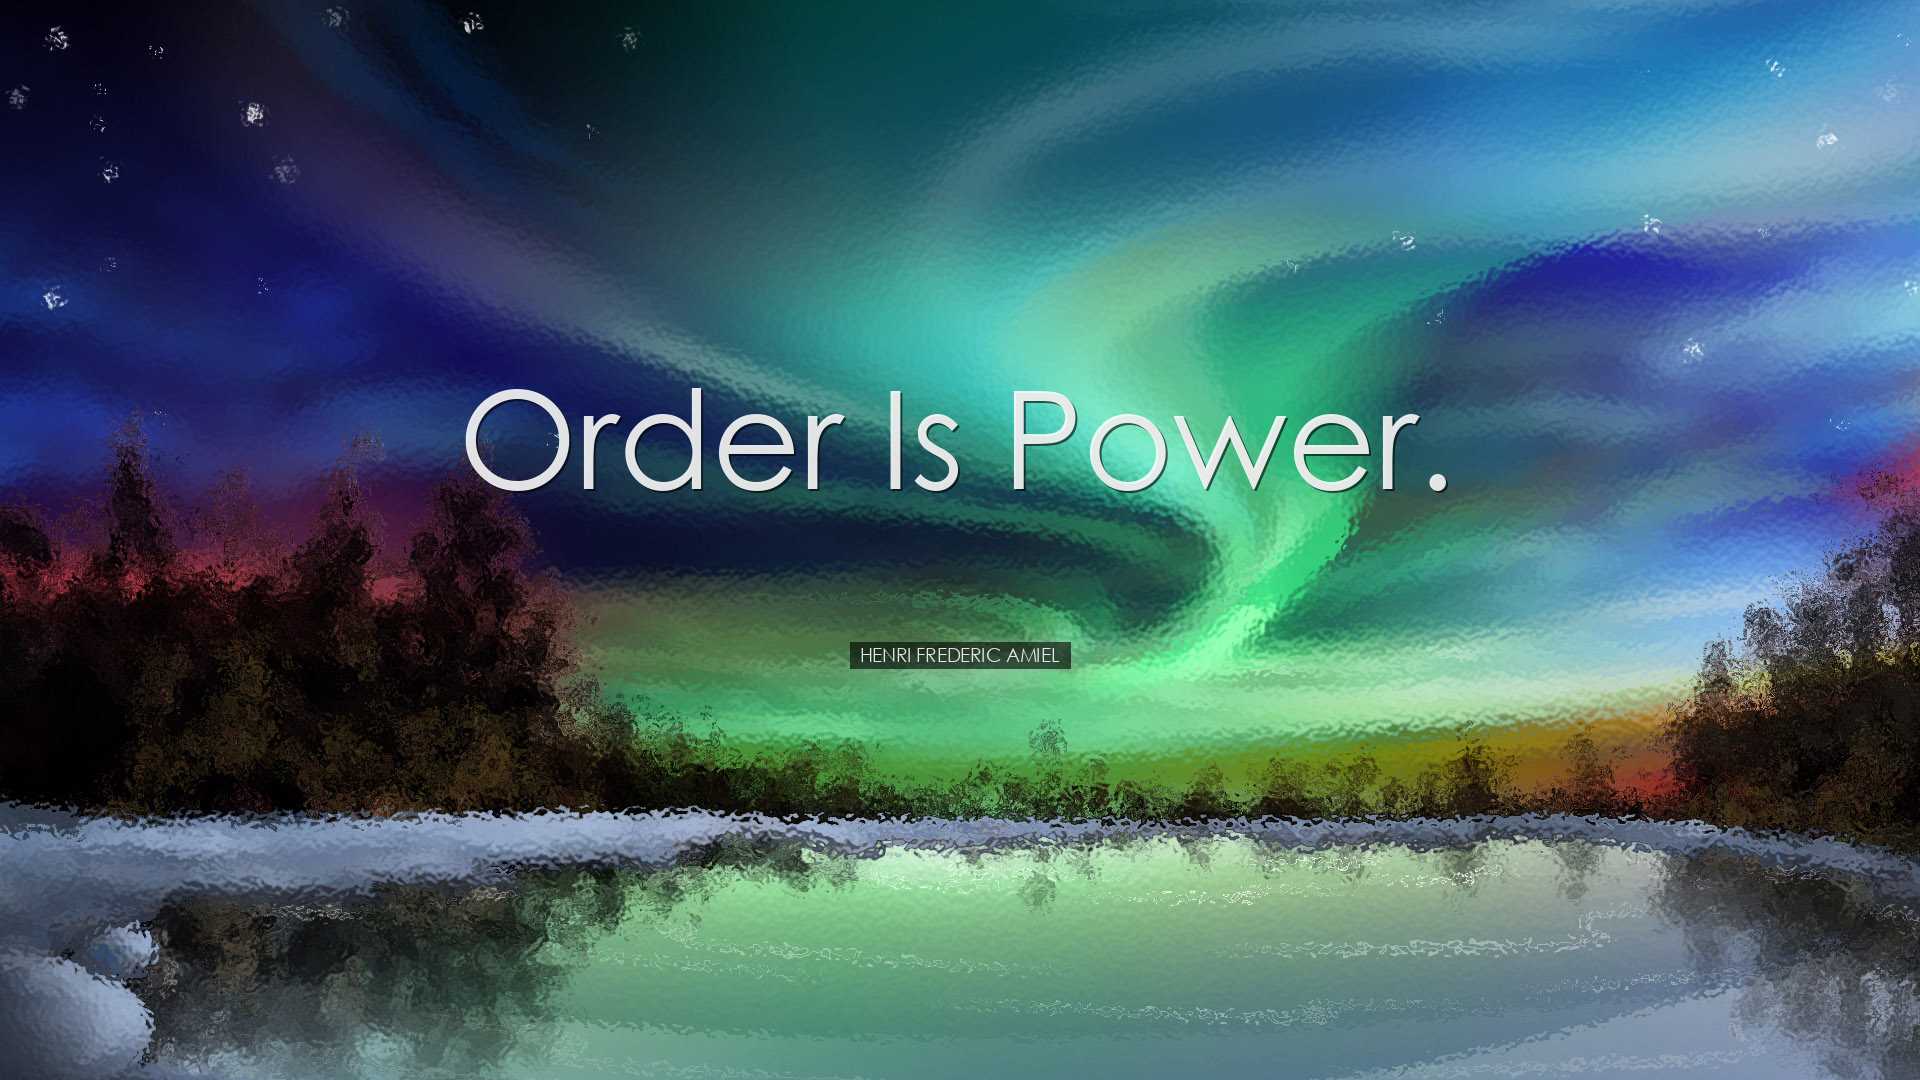 Order is power. - Henri Frederic Amiel